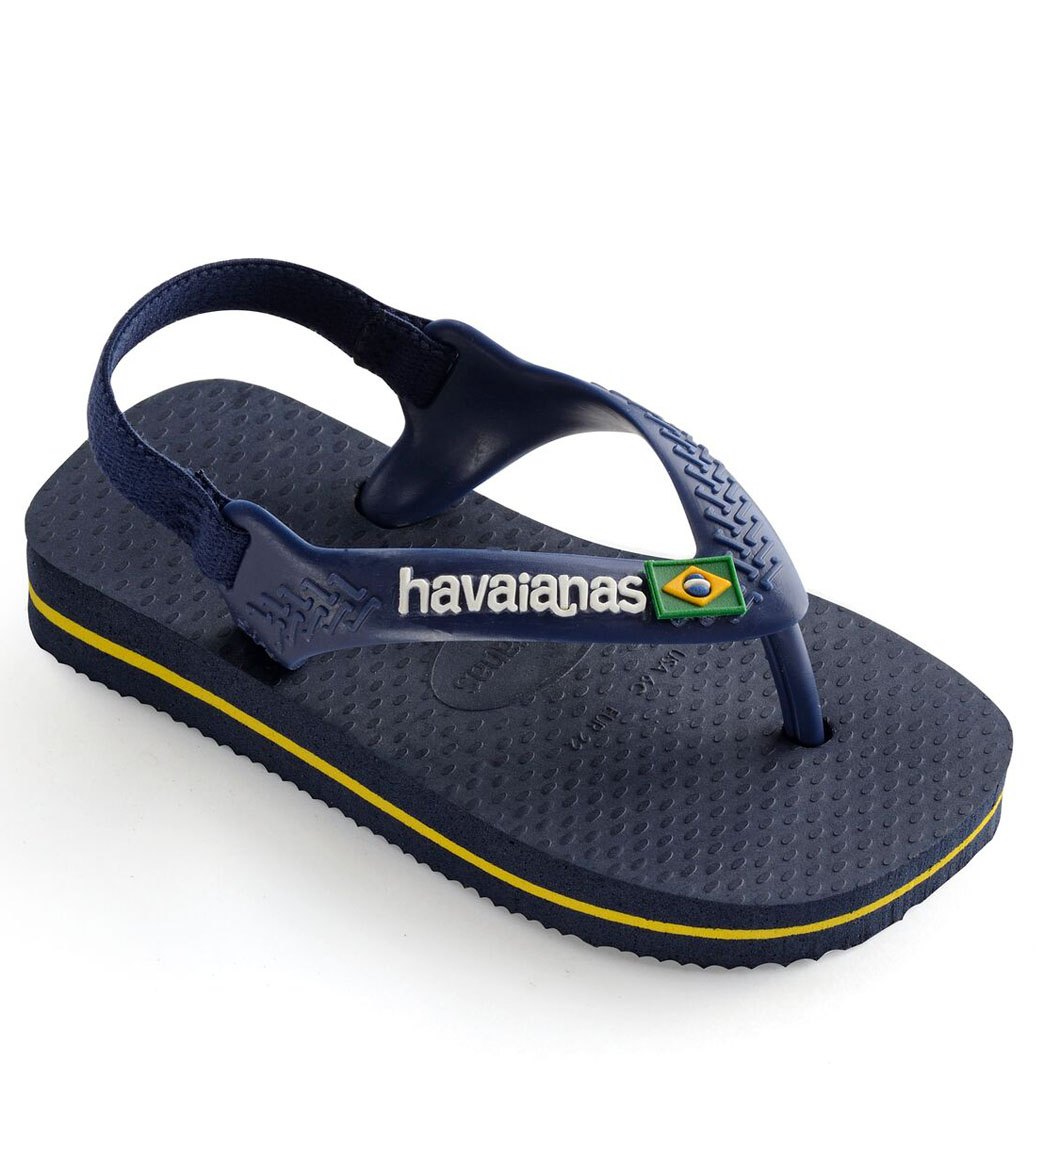 Havaianas Brazil Logo Flip Flop - Navy Blue/Citrus Yellow Us 4/4.5 Brazil 17/18 - Swimoutlet.com